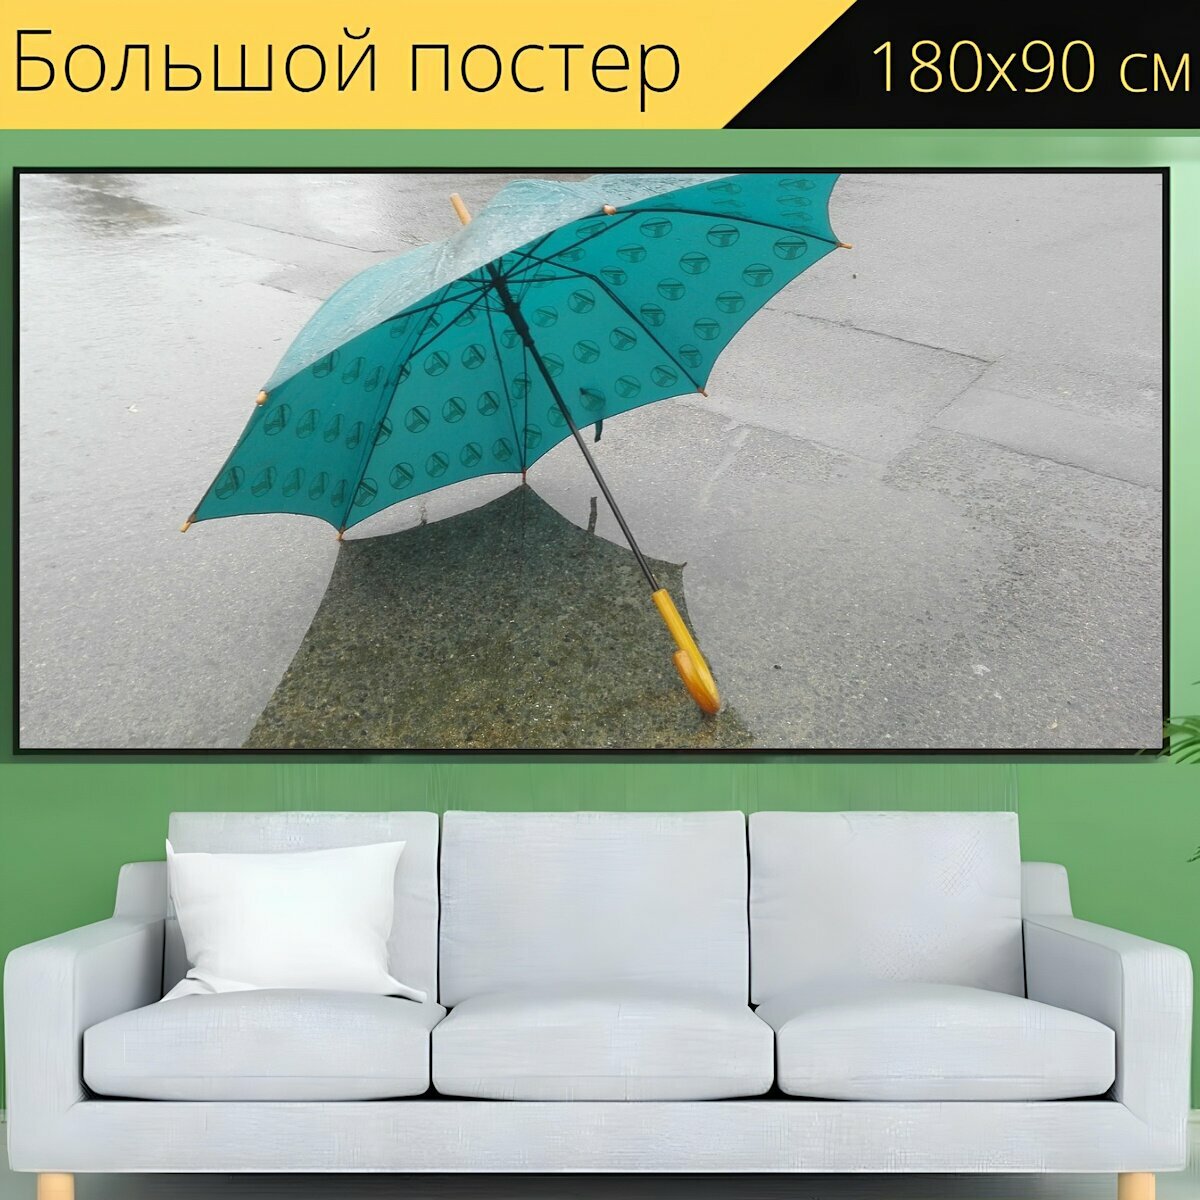 Большой постер "Дождь, зонтик, зима" 180 x 90 см. для интерьера